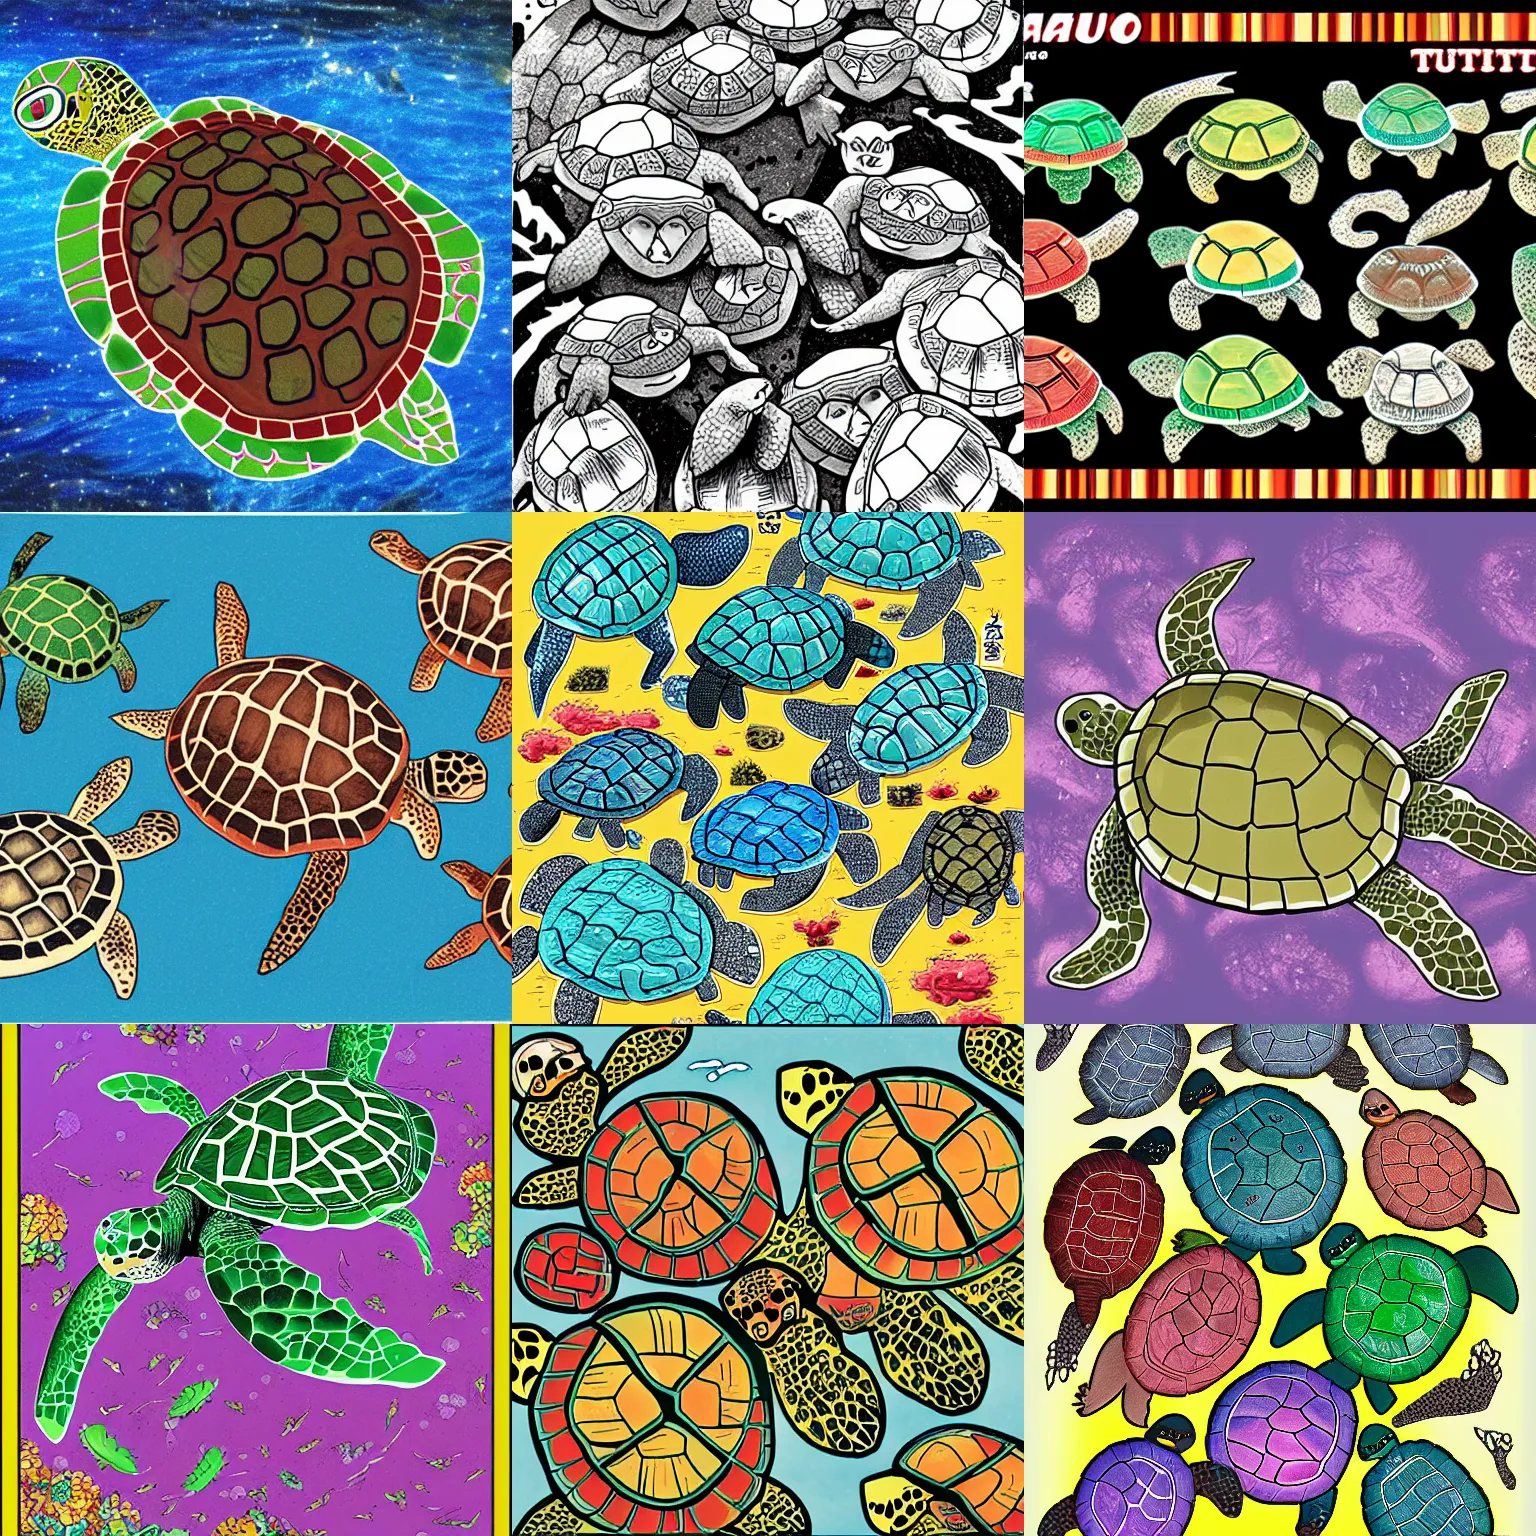 Prompt: image of manga turtles